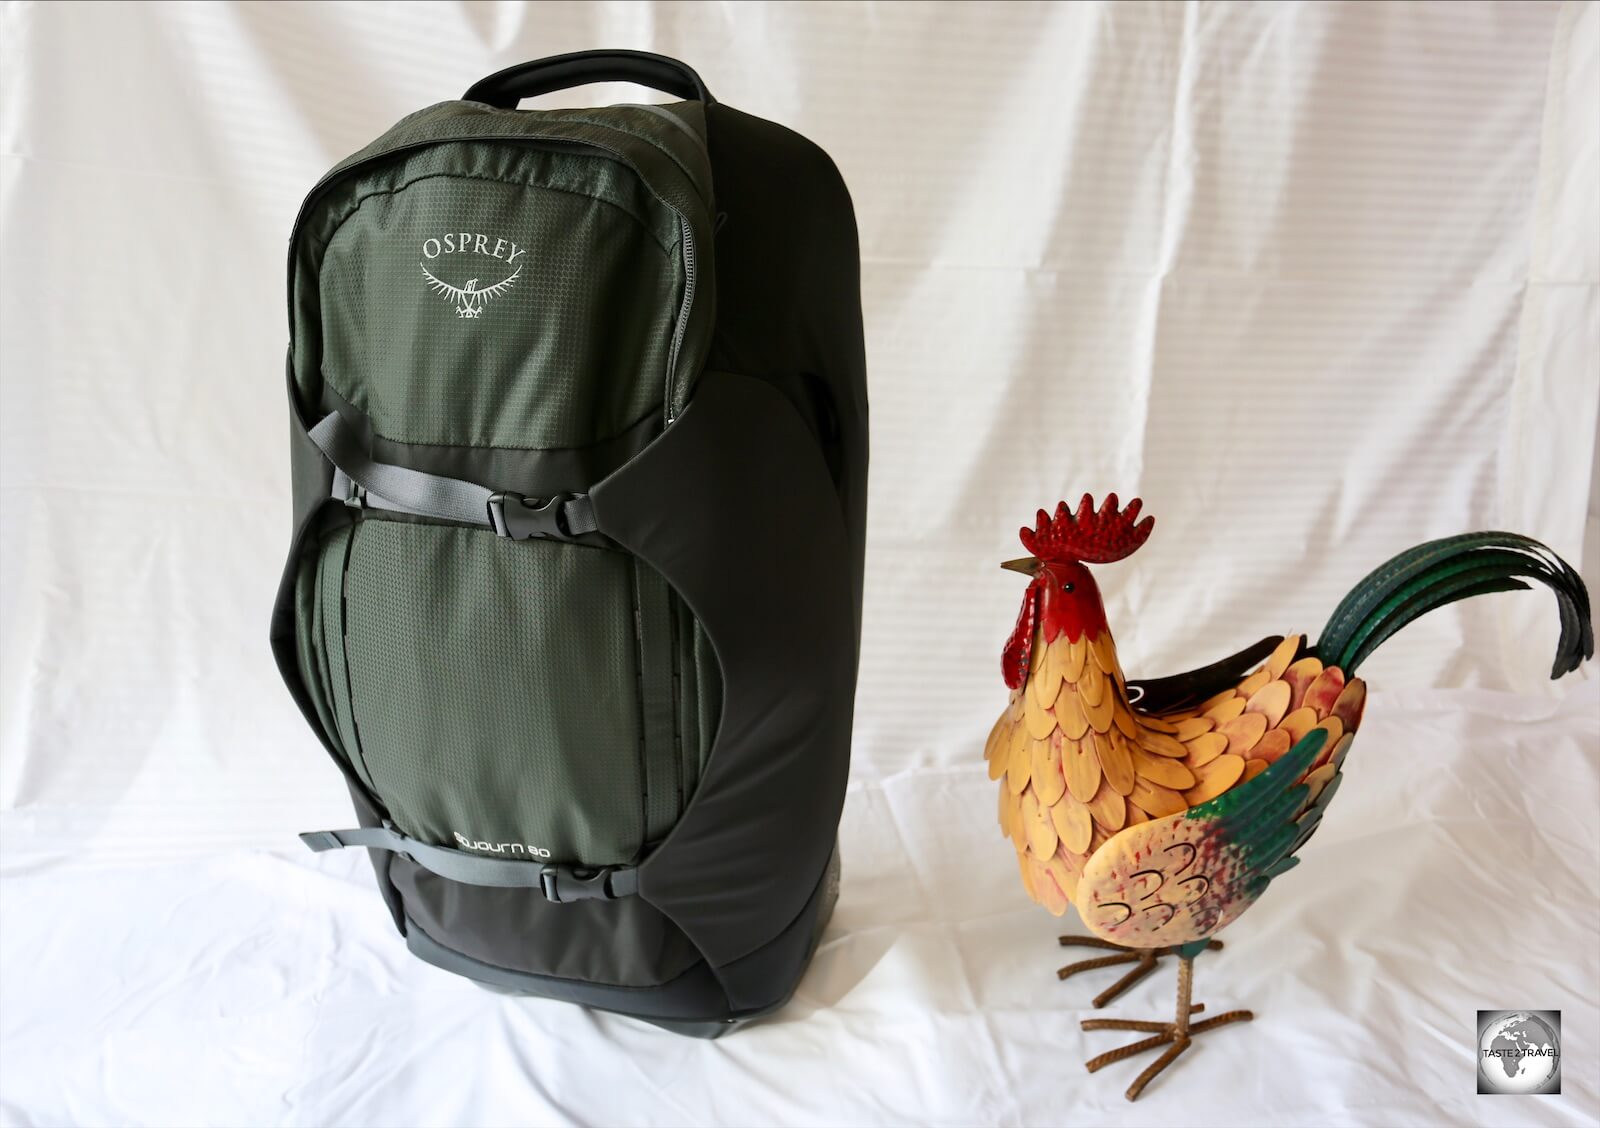 Osprey Sojourn 80 backpack.